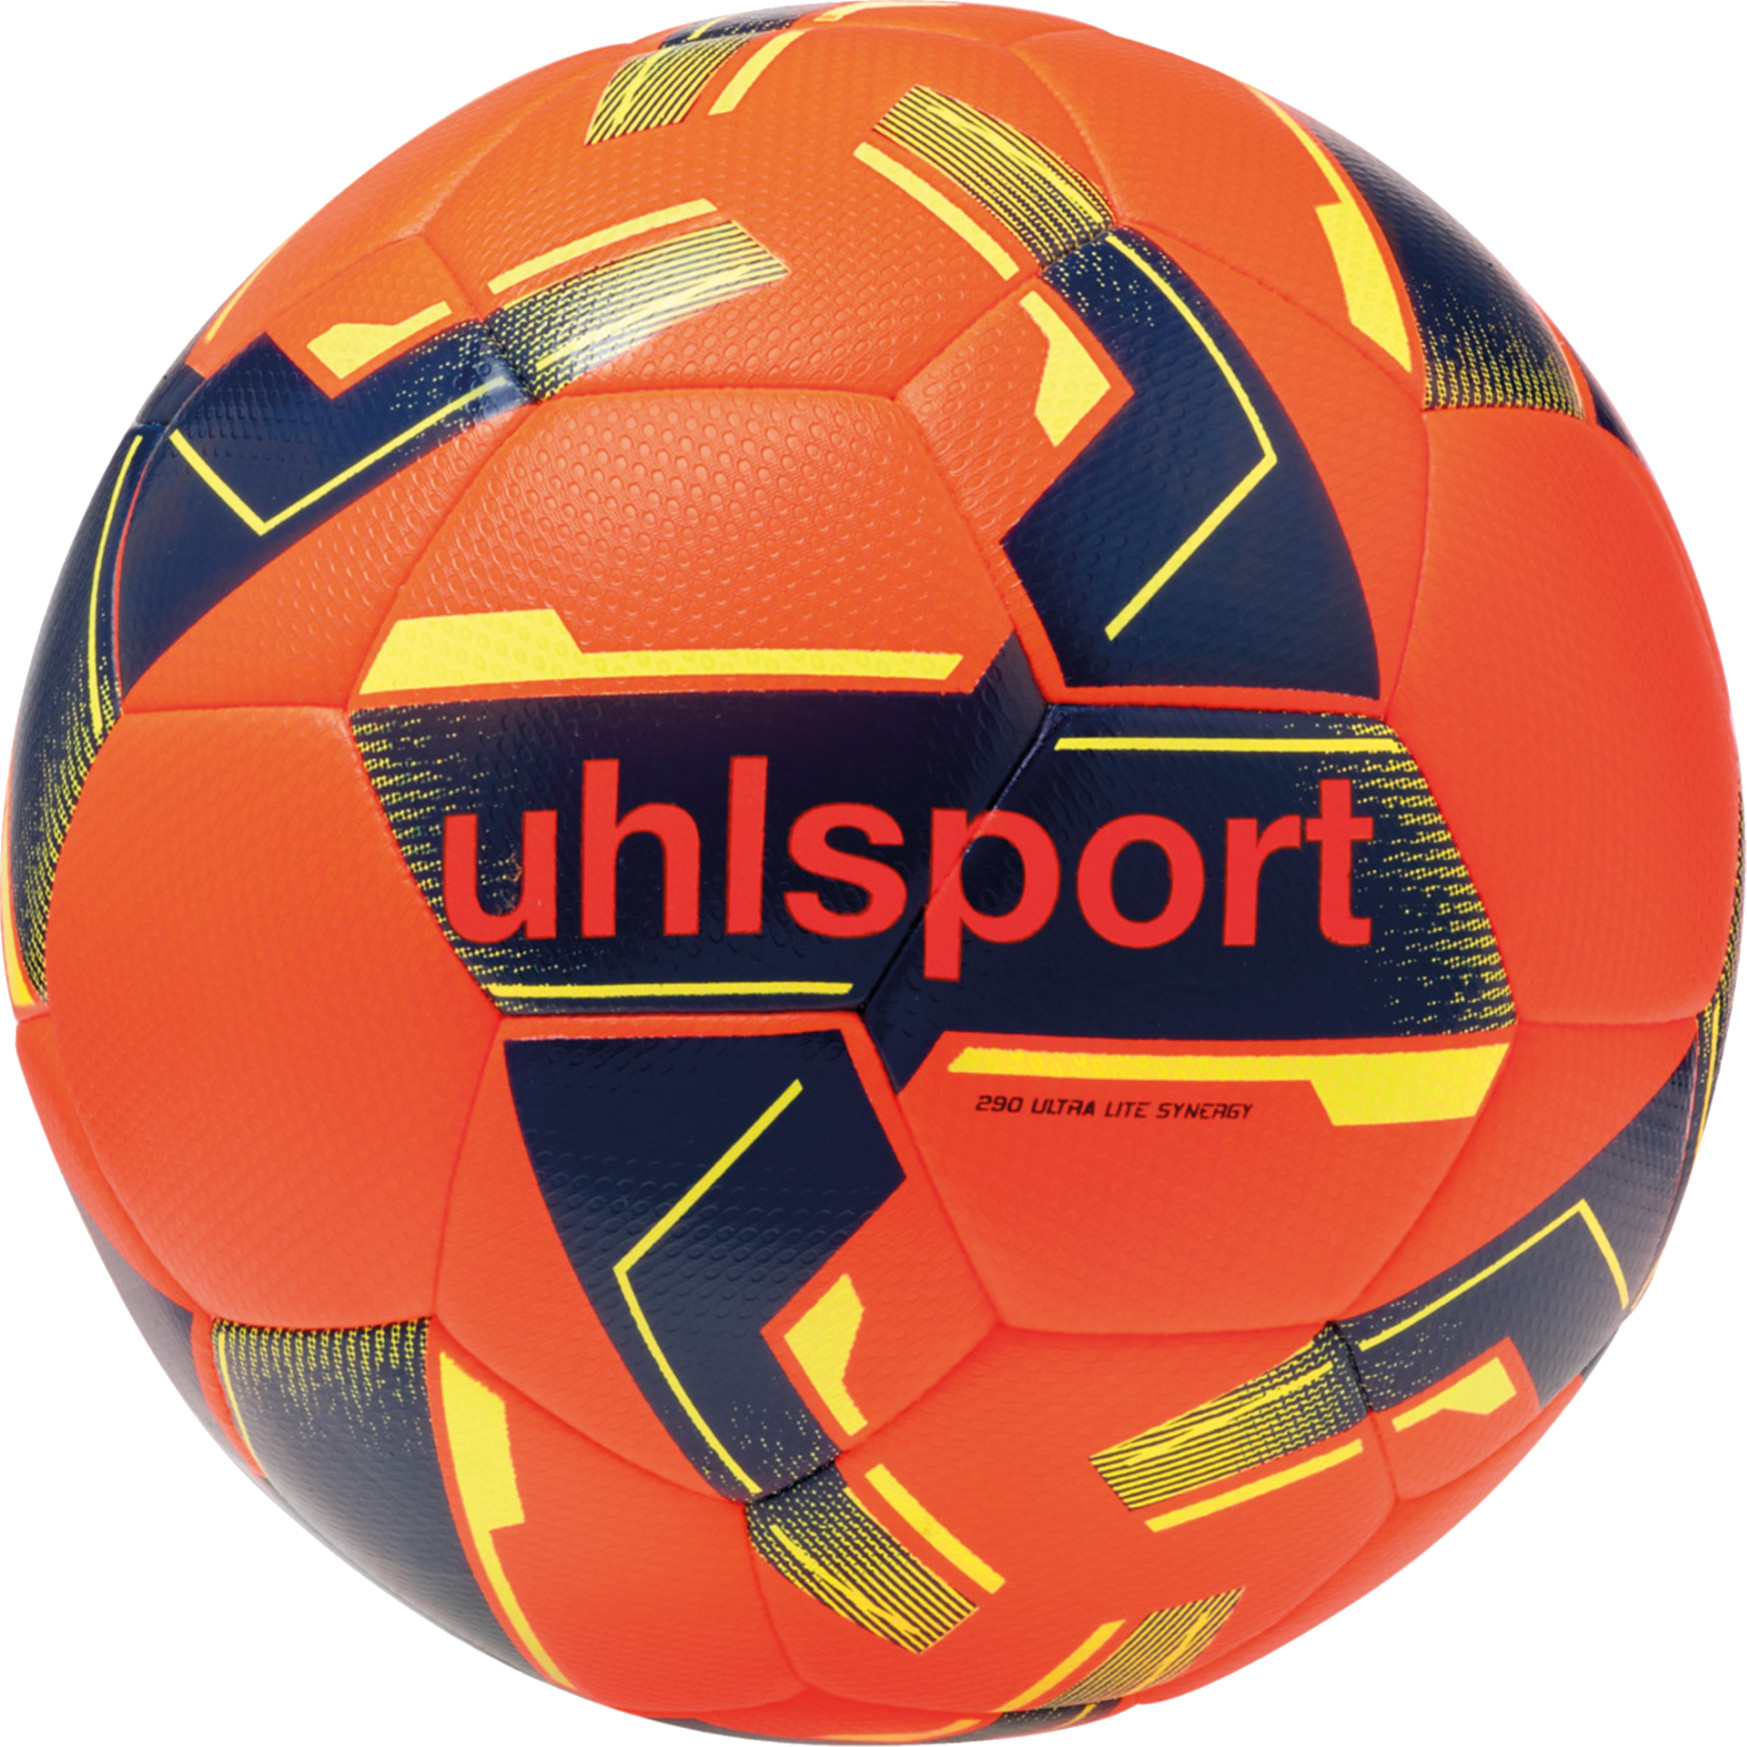 Bola Uhlsport Synergy Ultra 290g Lightball